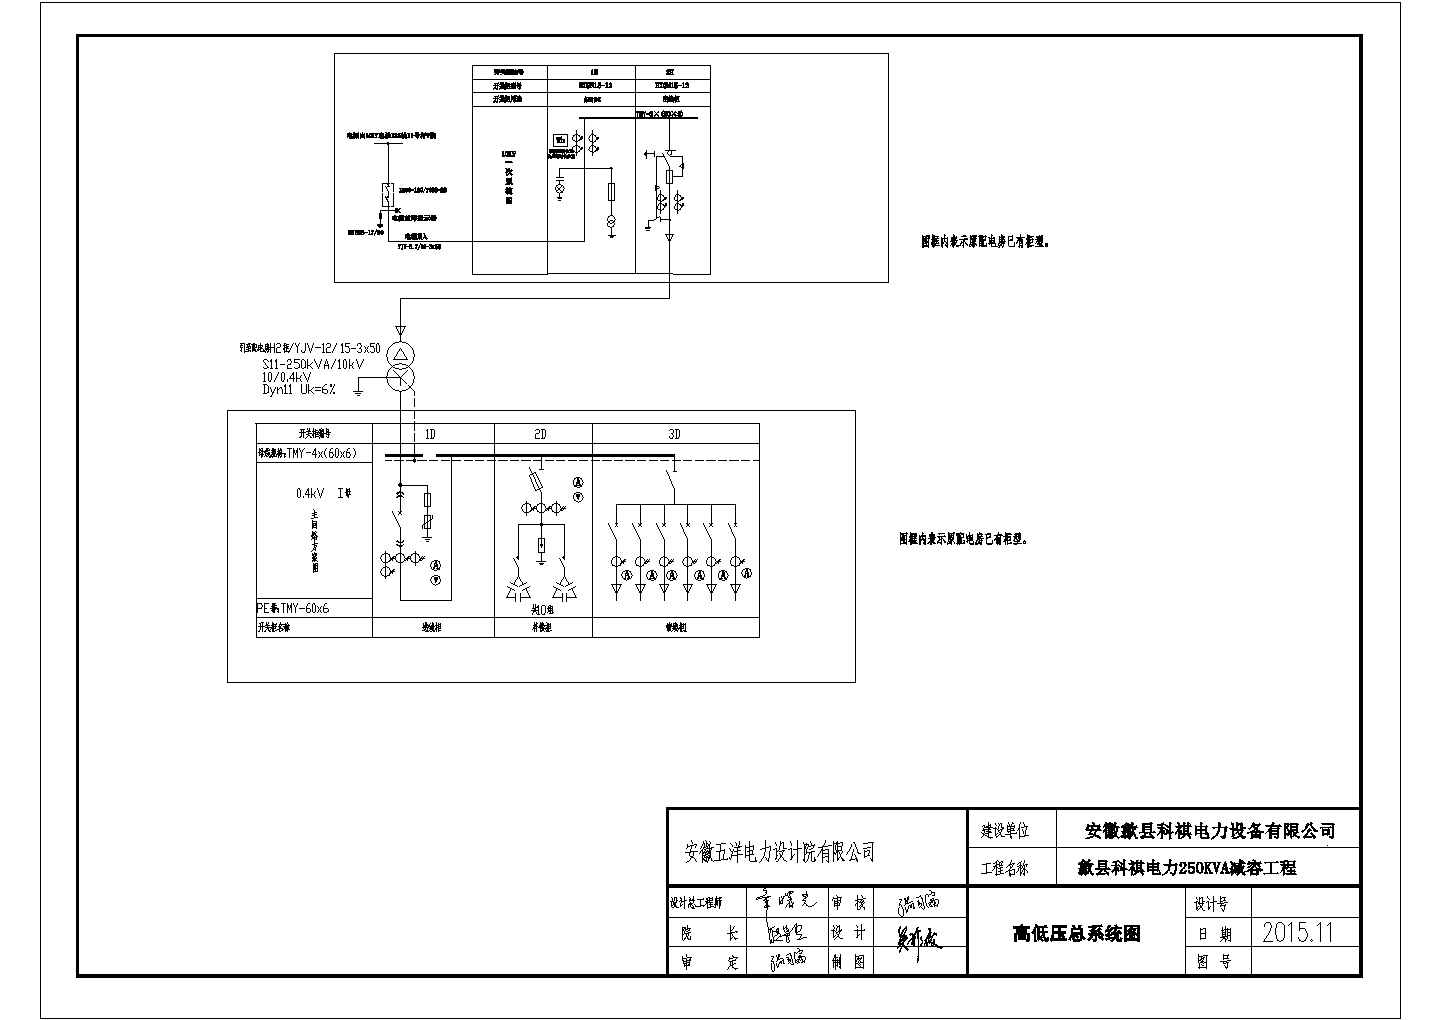 【安徽】某电力设备企业专配电工程施工图